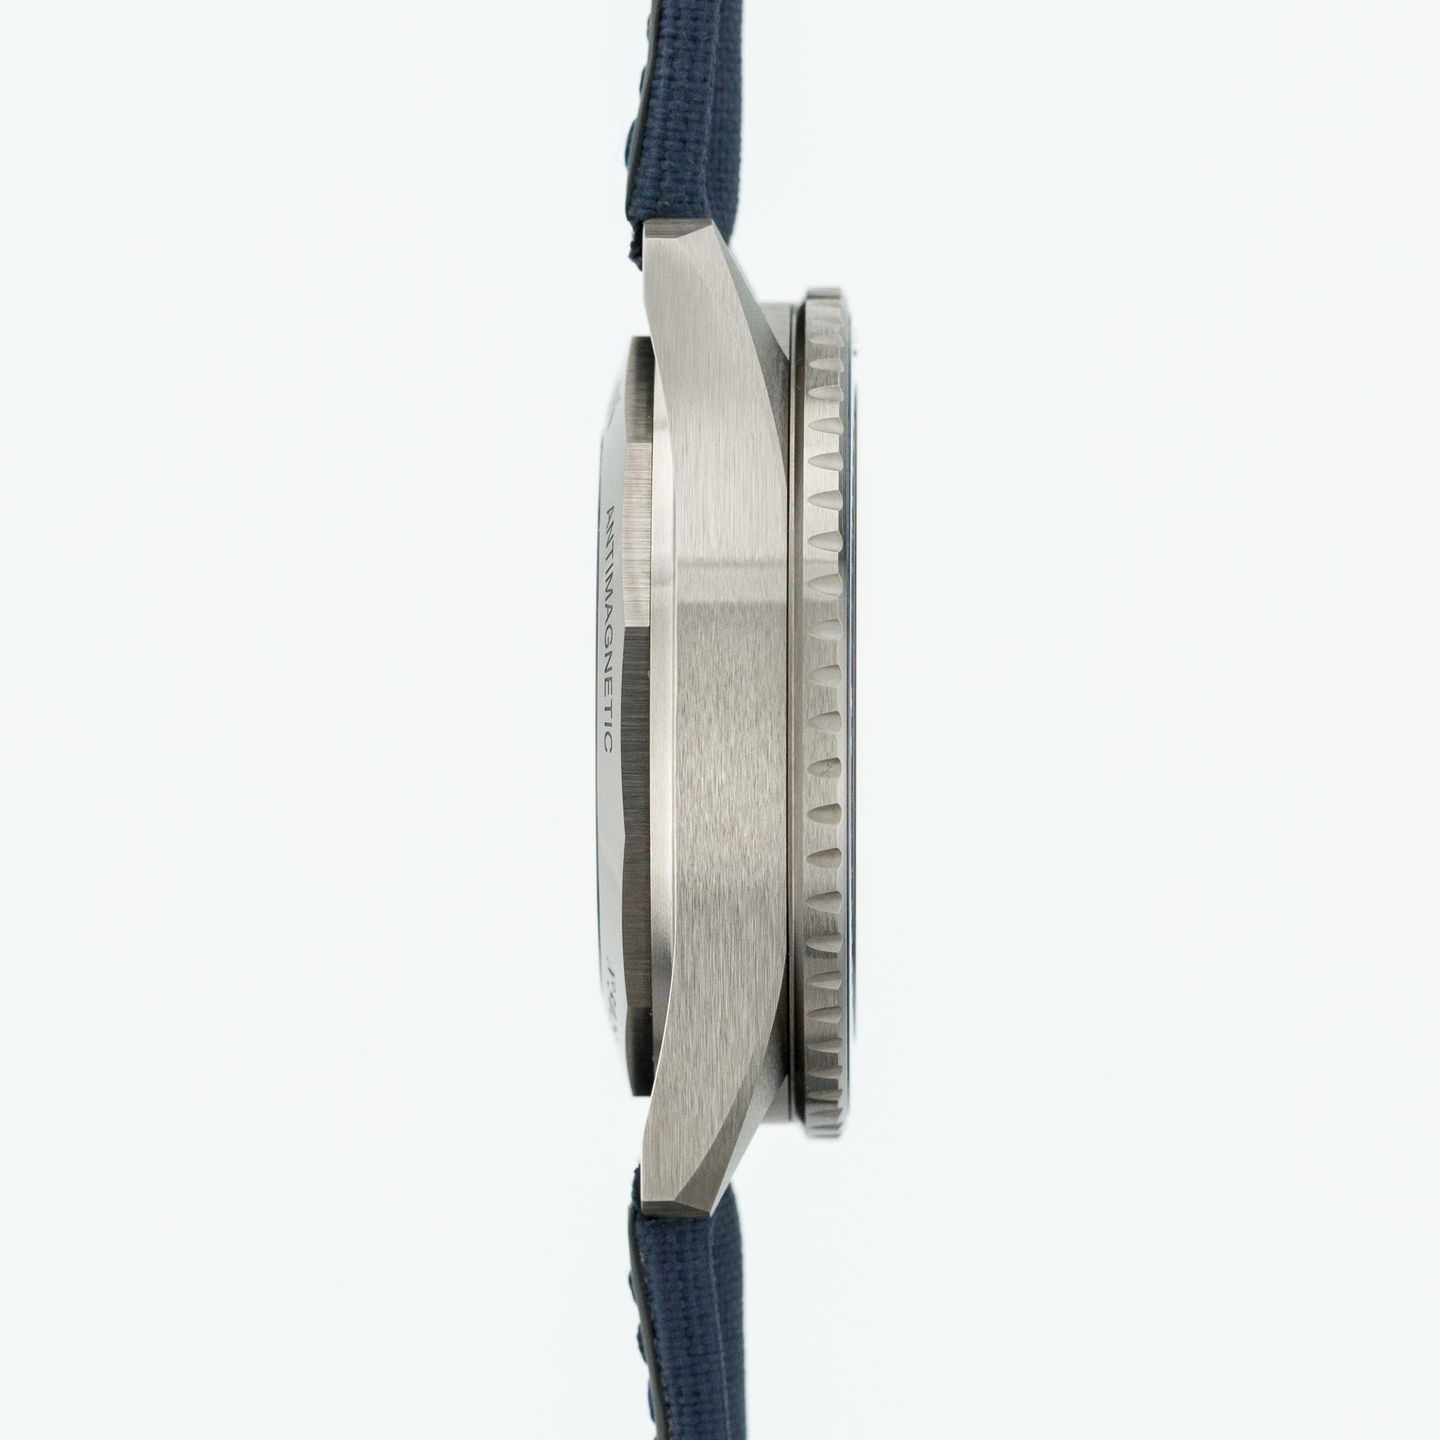 Blancpain Fifty Fathoms Bathyscaphe 5000-0240-O52A (2021) - Blue dial 44 mm Ceramic case (6/7)